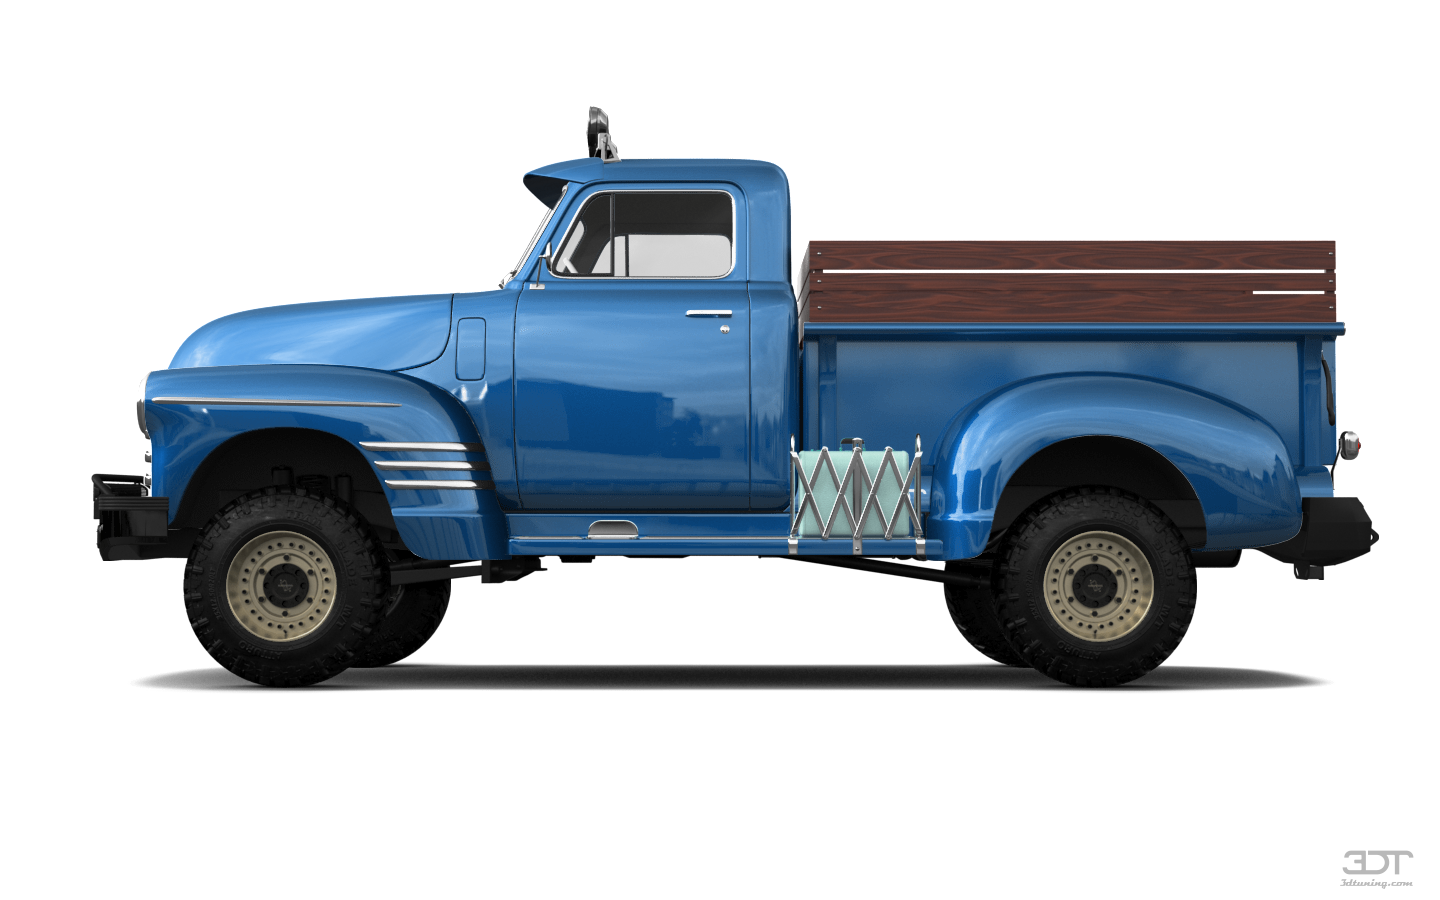 Chevrolet 3100 2 Door pickup truck 1950